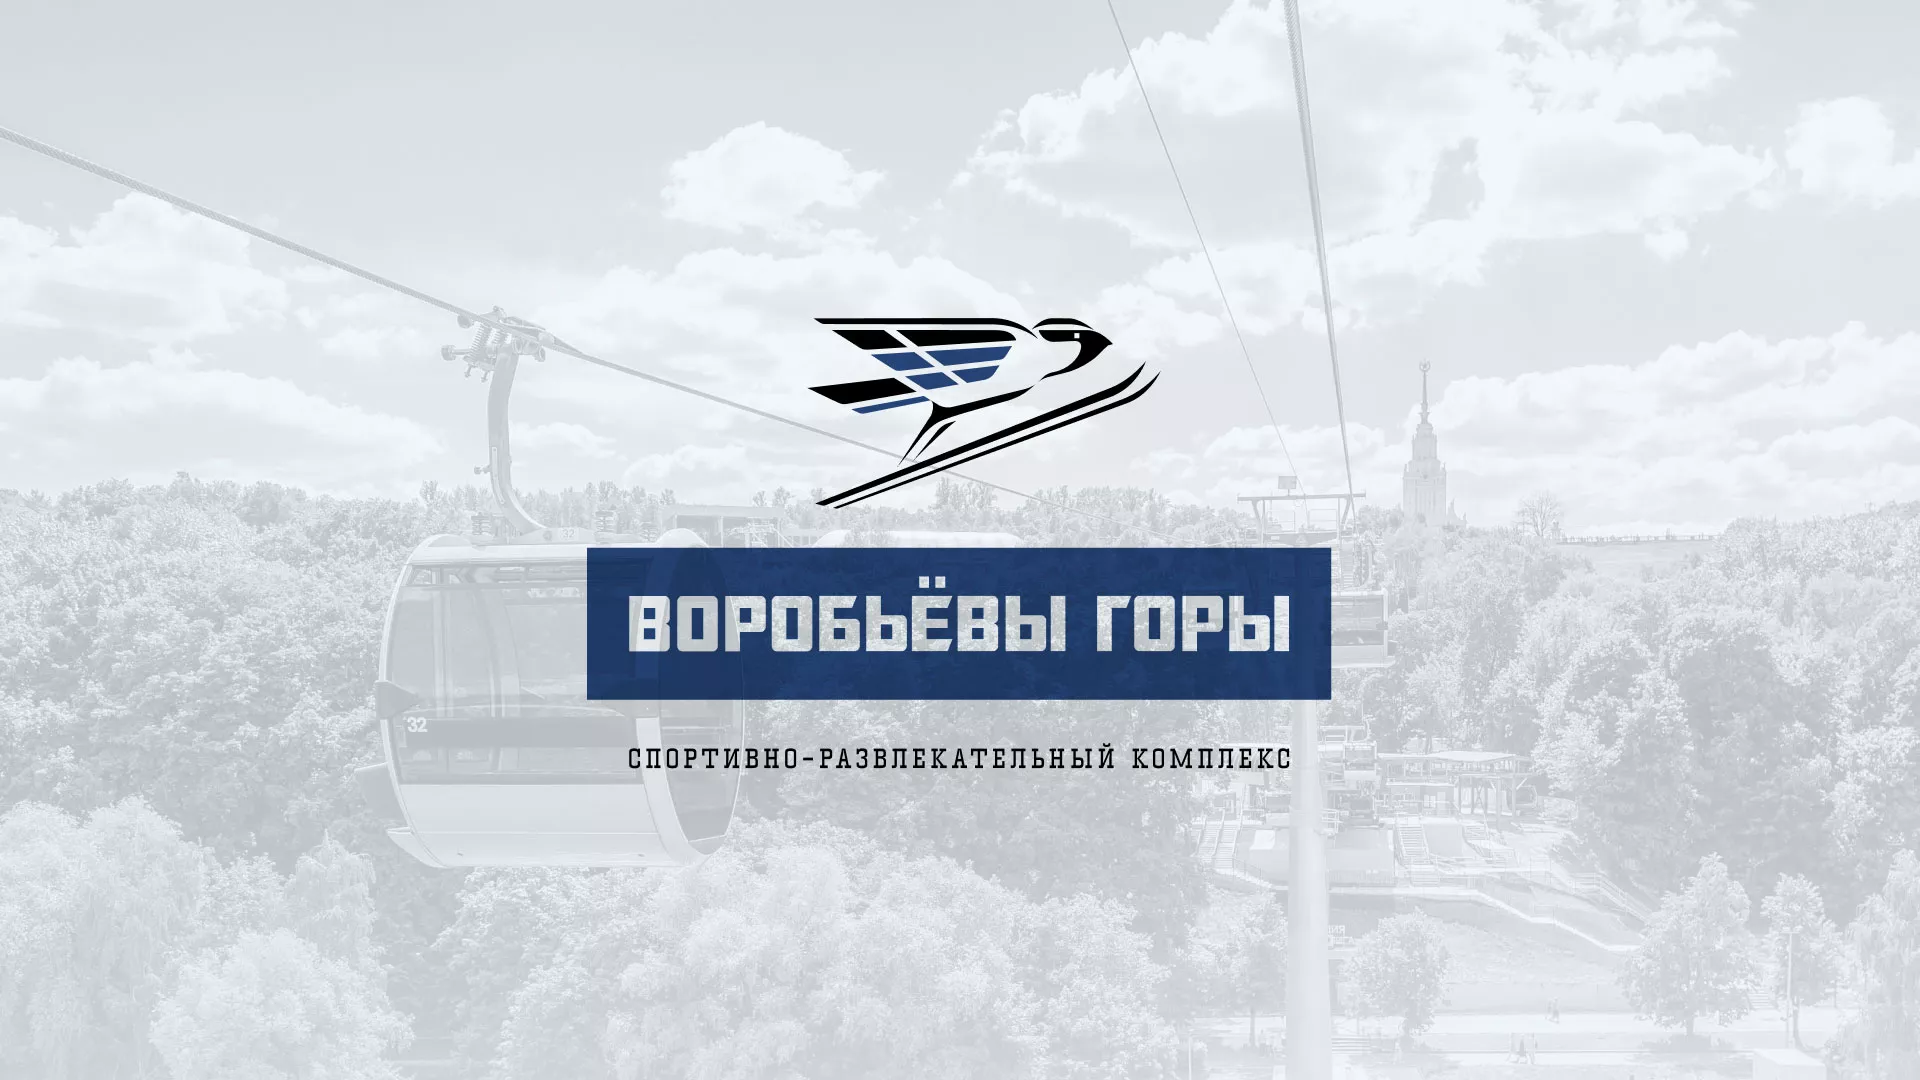 Разработка сайта в Болхове для спортивно-развлекательного комплекса «Воробьёвы горы»